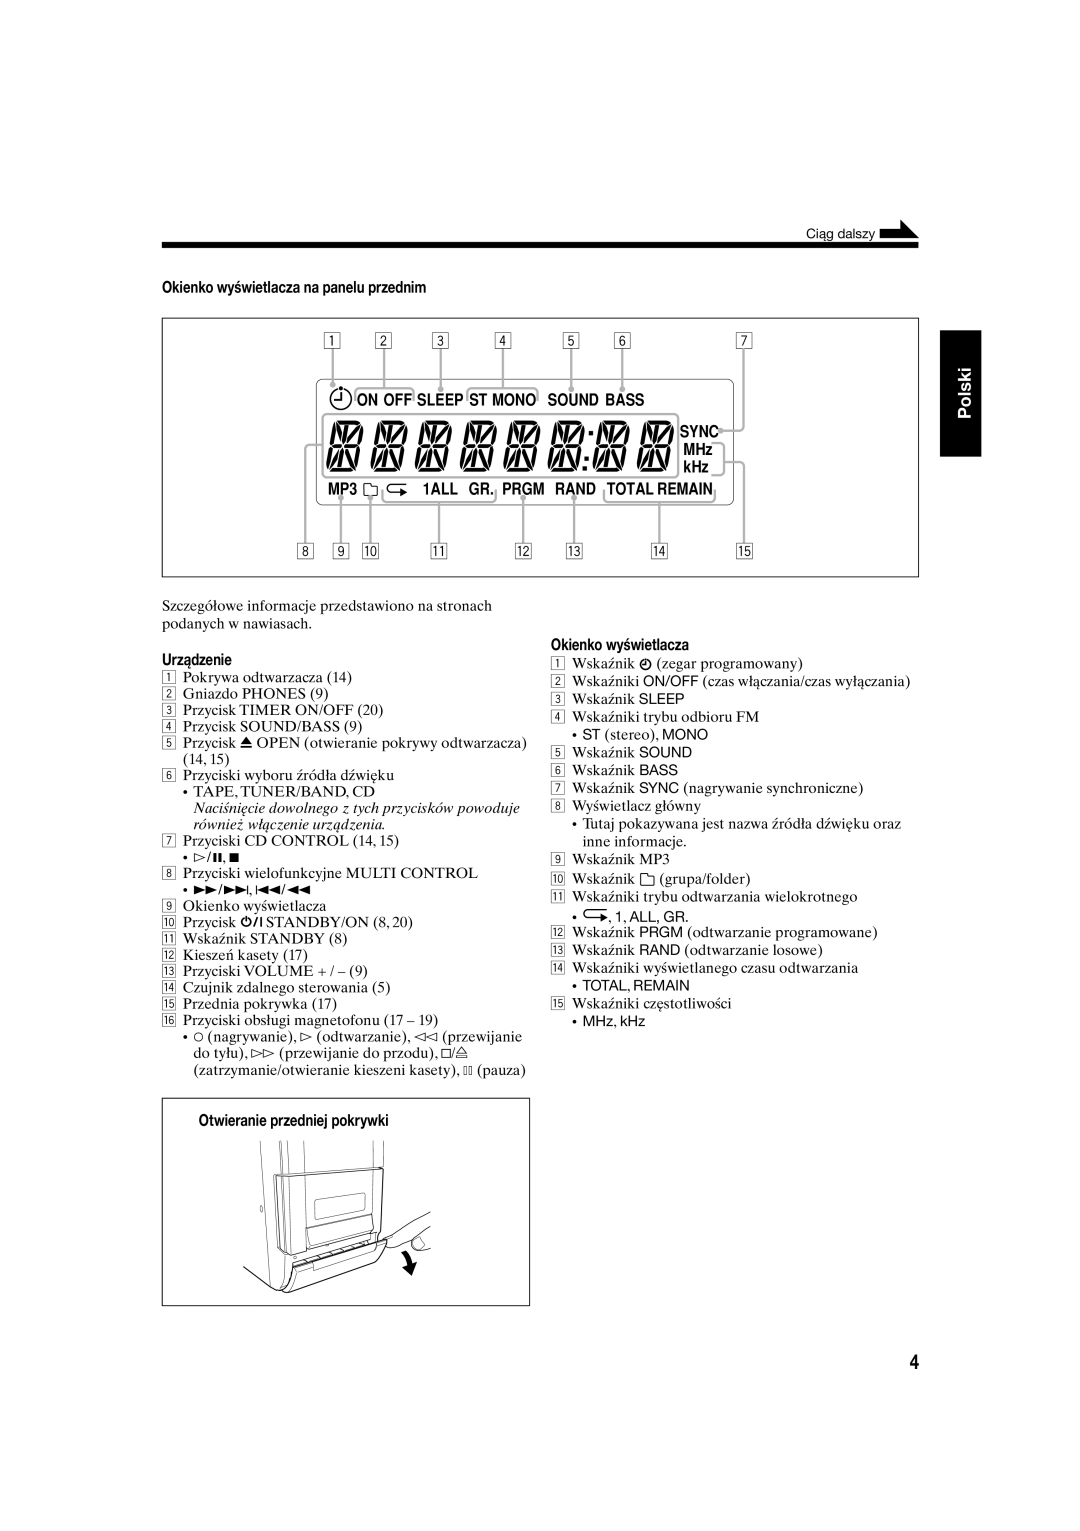 JVC UX-S10 manual Polski, Okienko wyświetlacza na panelu przednim, Urządzenie, Otwieranie przedniej pokrywki, •, 1, ALL, GR 